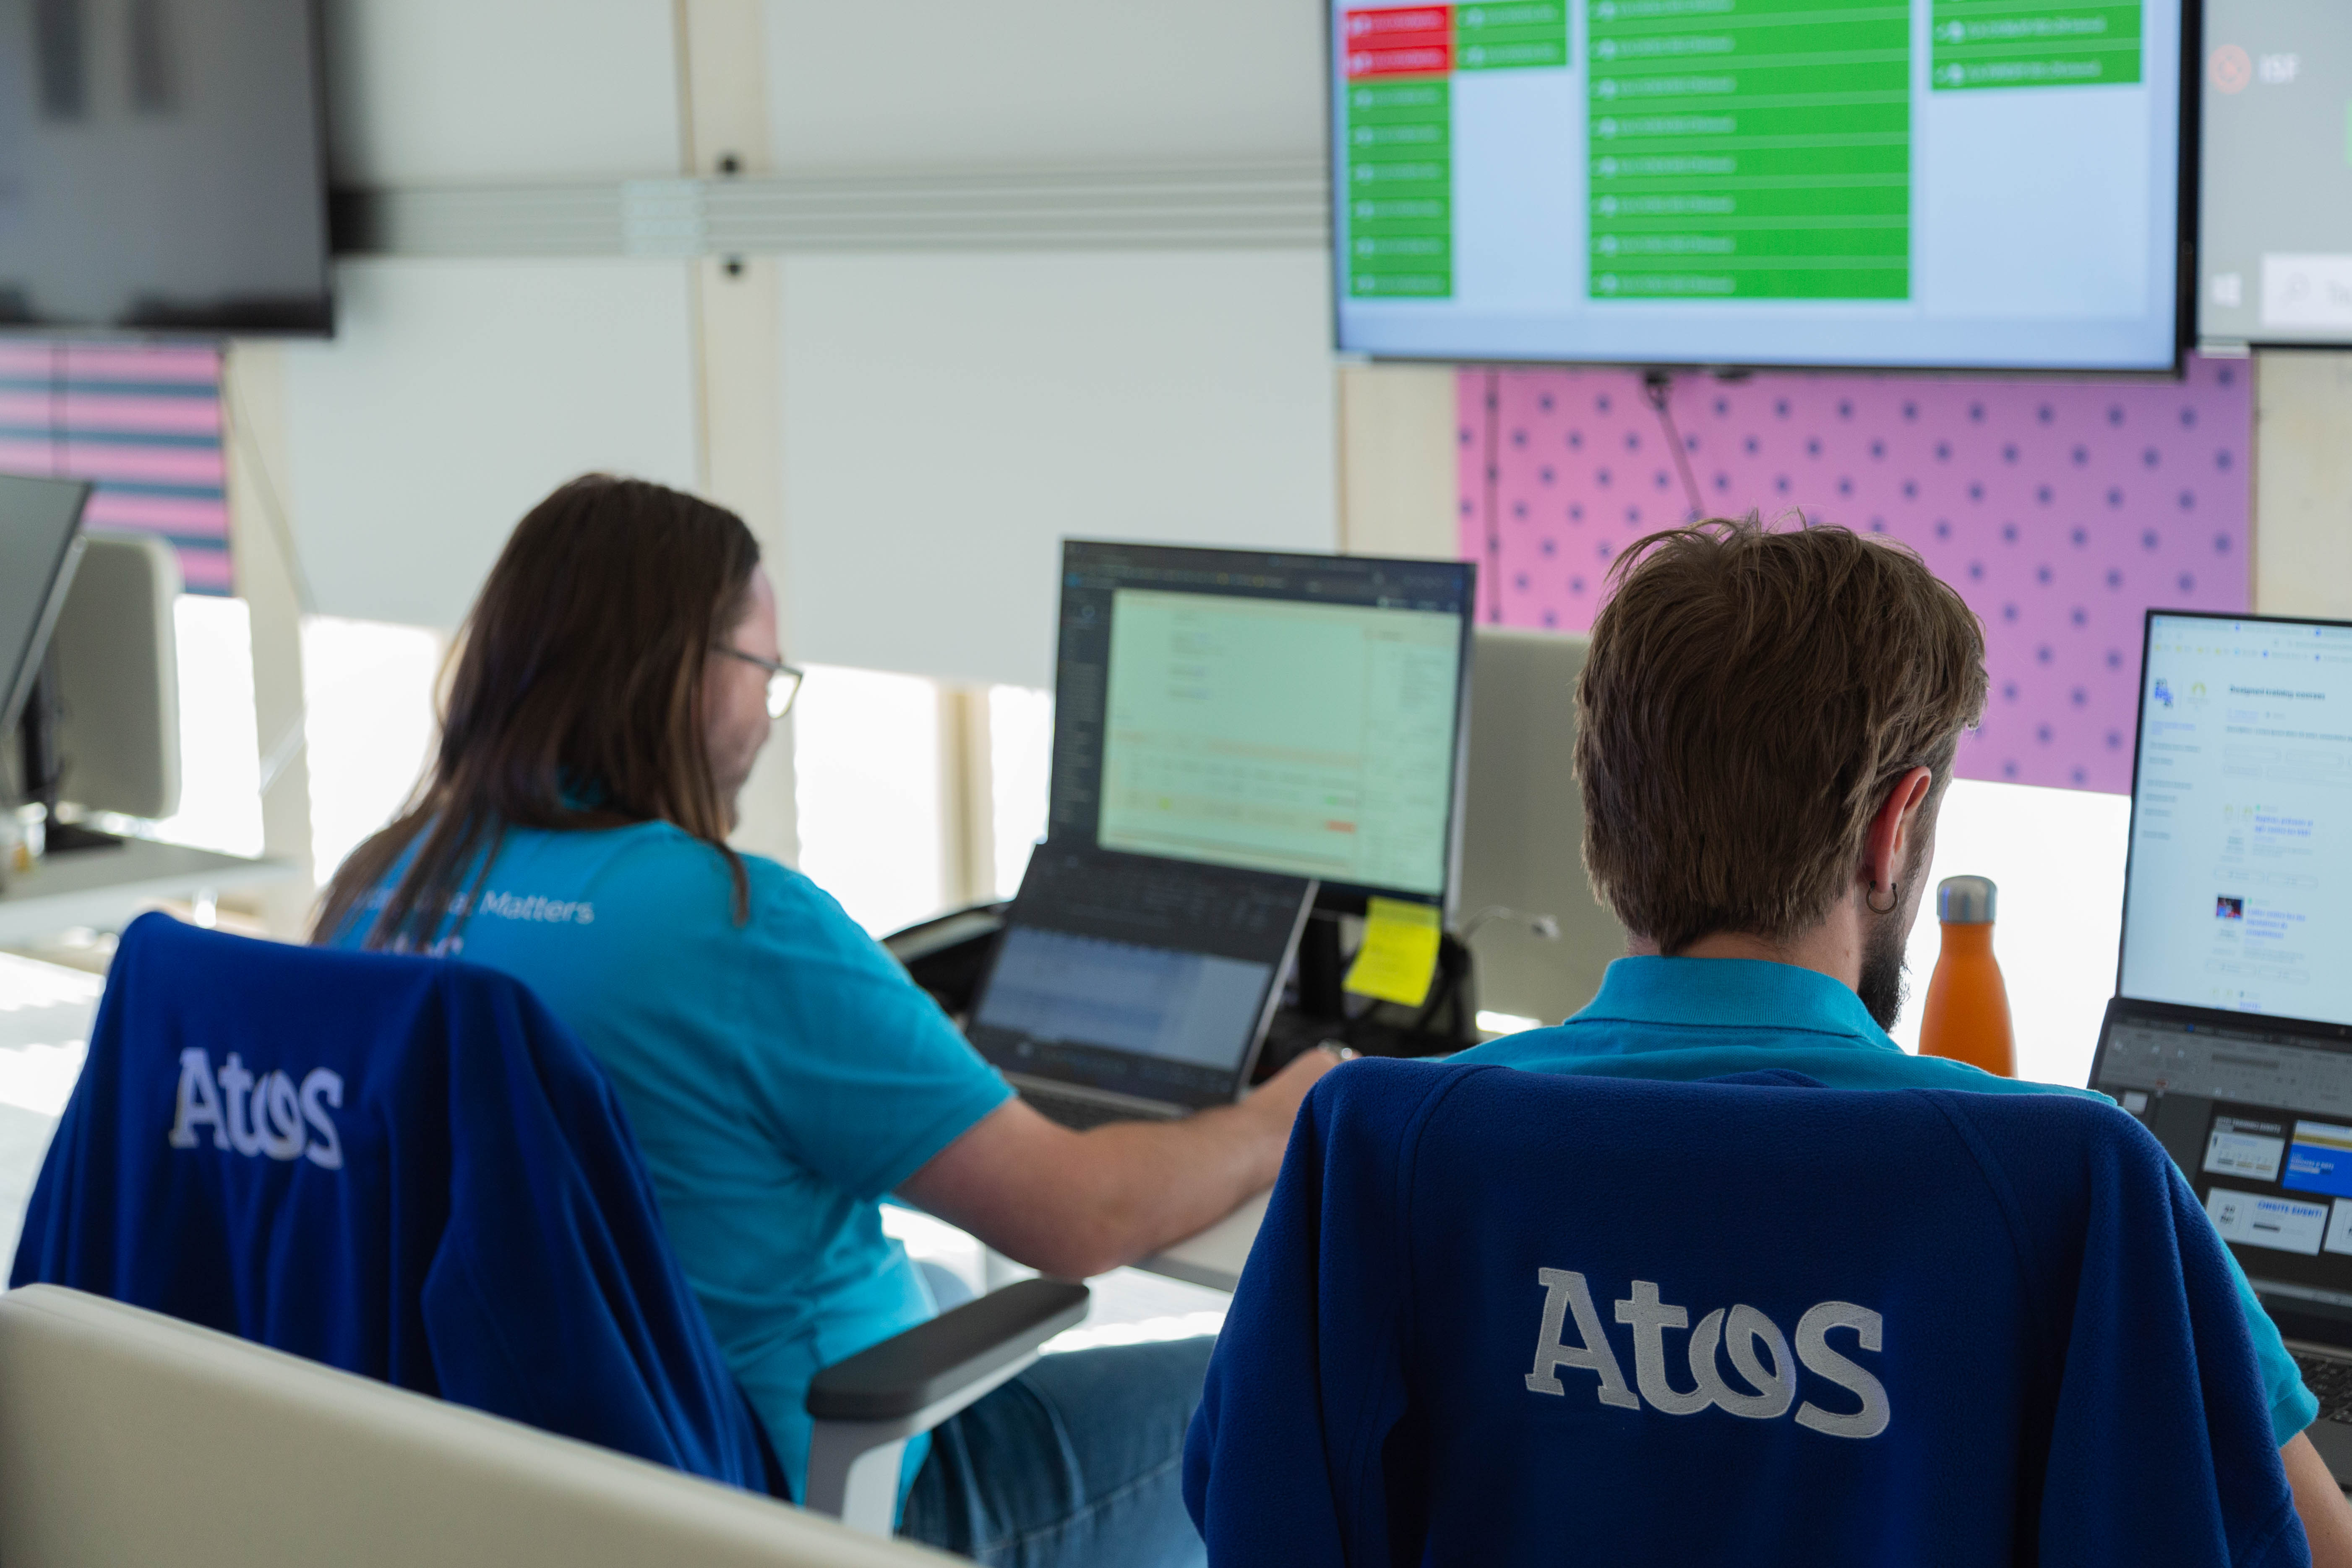 Les techniciens informatiques de chez Atos collaborent avec d'autres experts de grands groupes pour éviter tout couac informatique. Atos